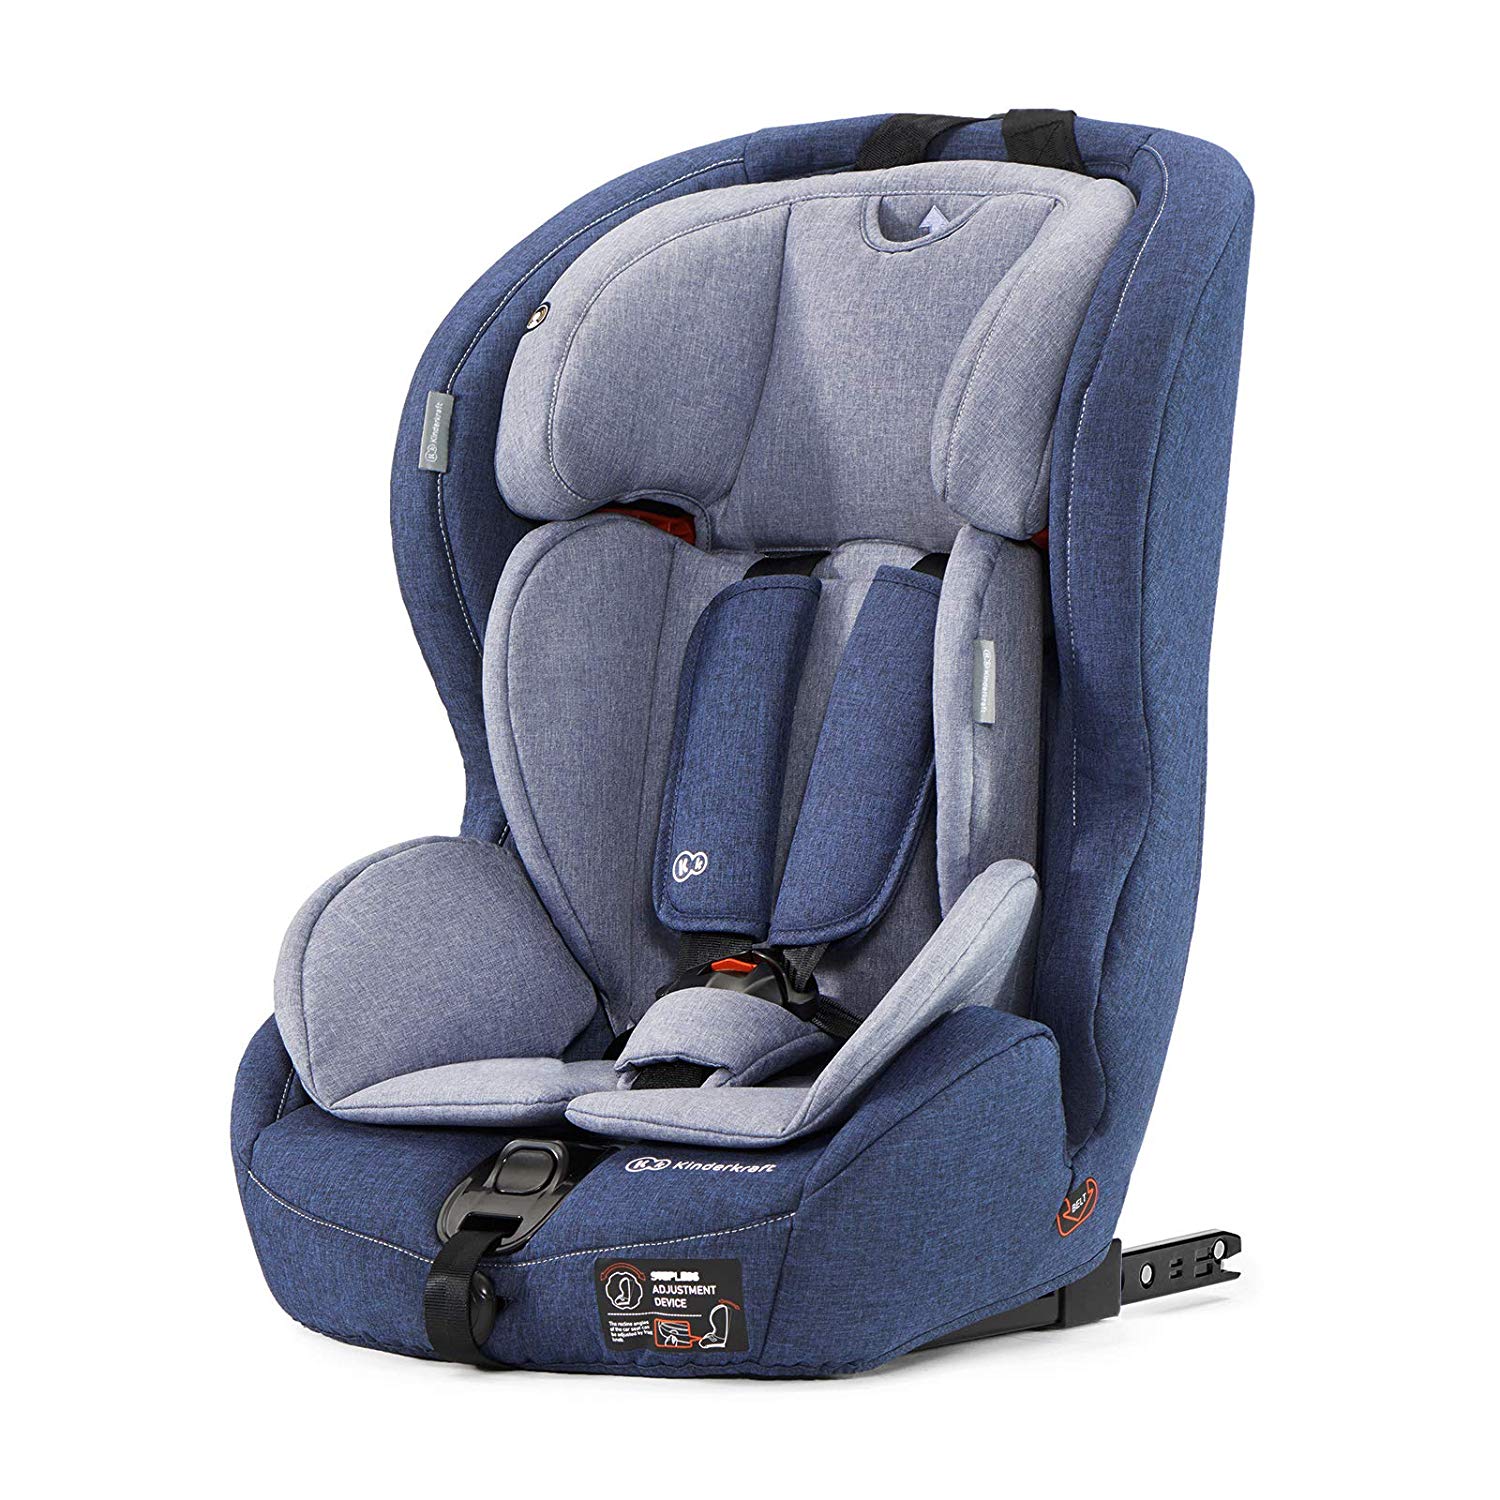 Kinderkraft Safetyfix Isofix Child Car Seat 9 to 36 kg Group 1 2 3 dark blue